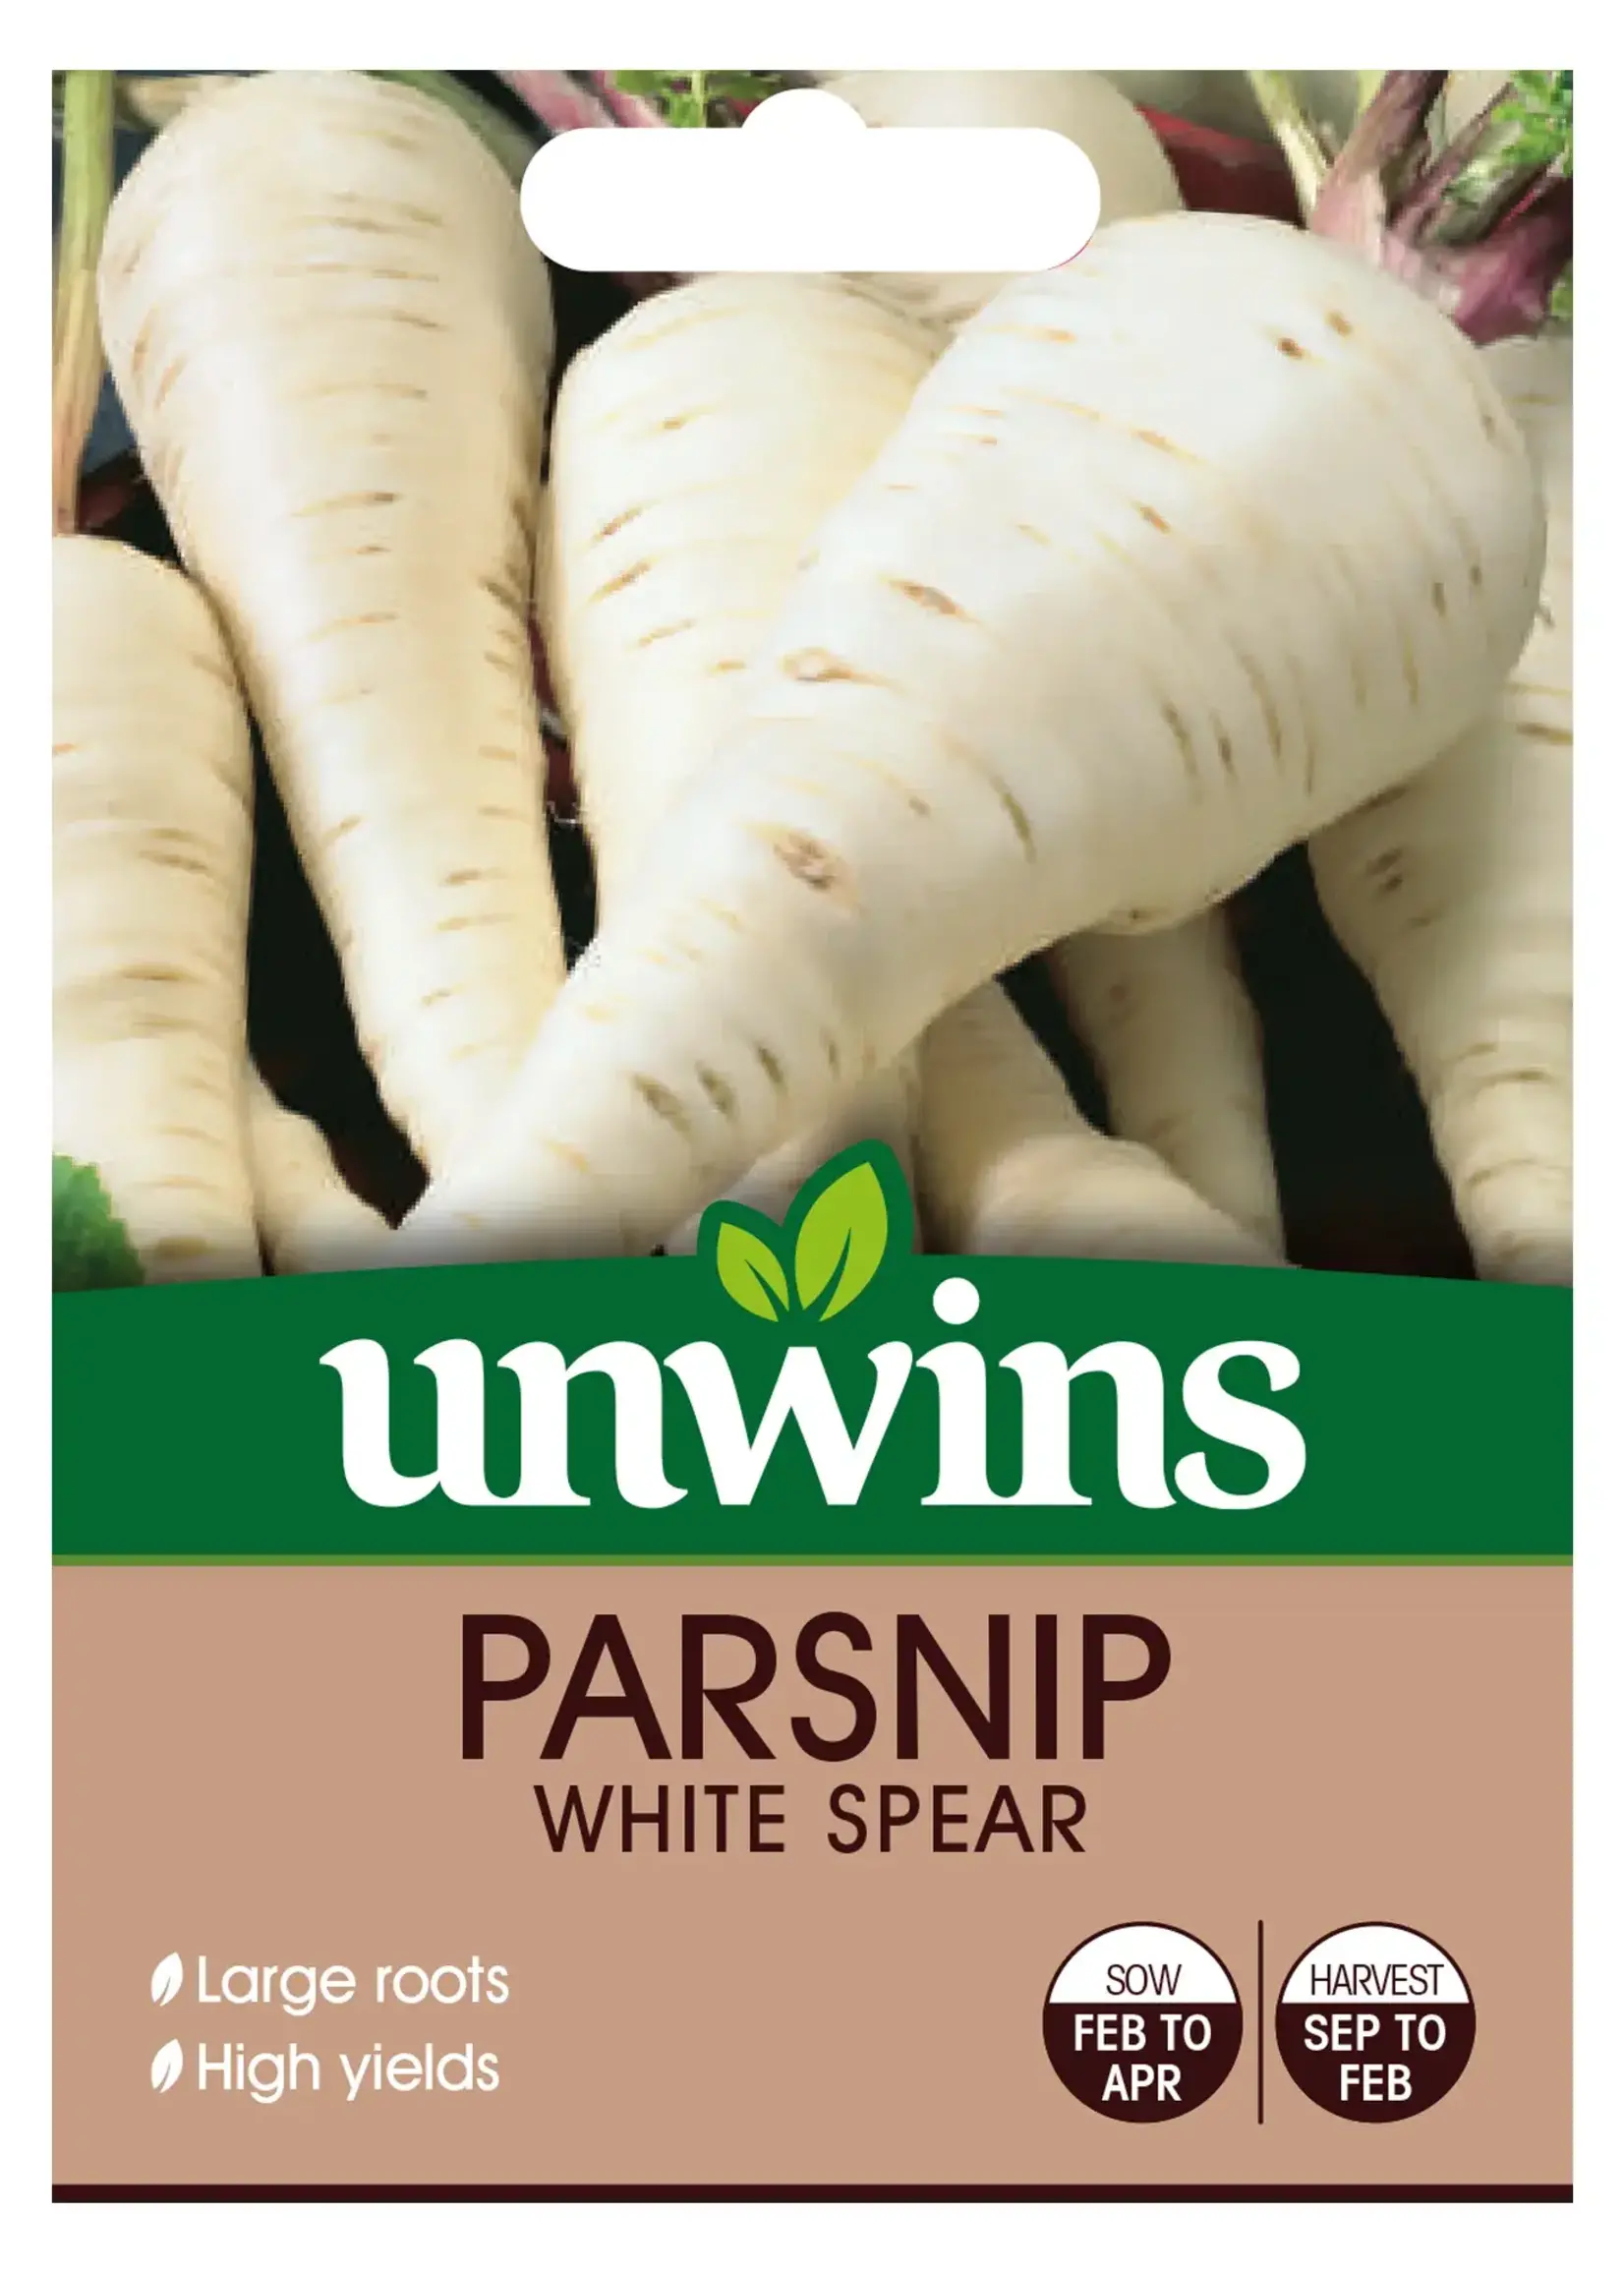 Unwins Parsnip - White Spear